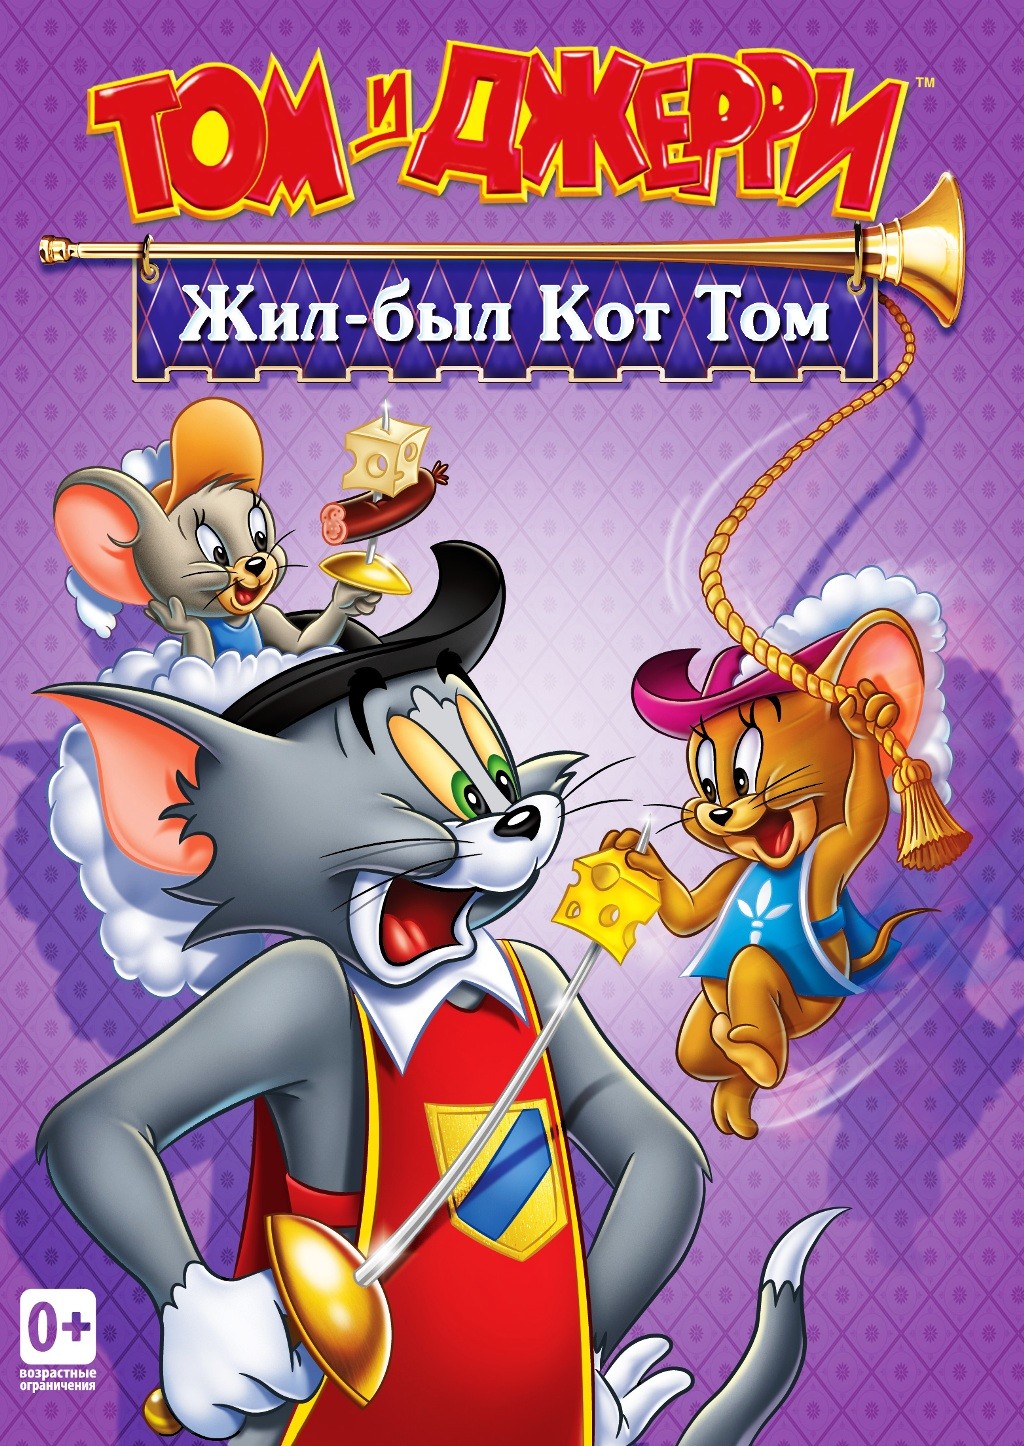 Том и Джерри. Жил-был кот Том. Сборник мультфильмов (региональное издание) (DVD)